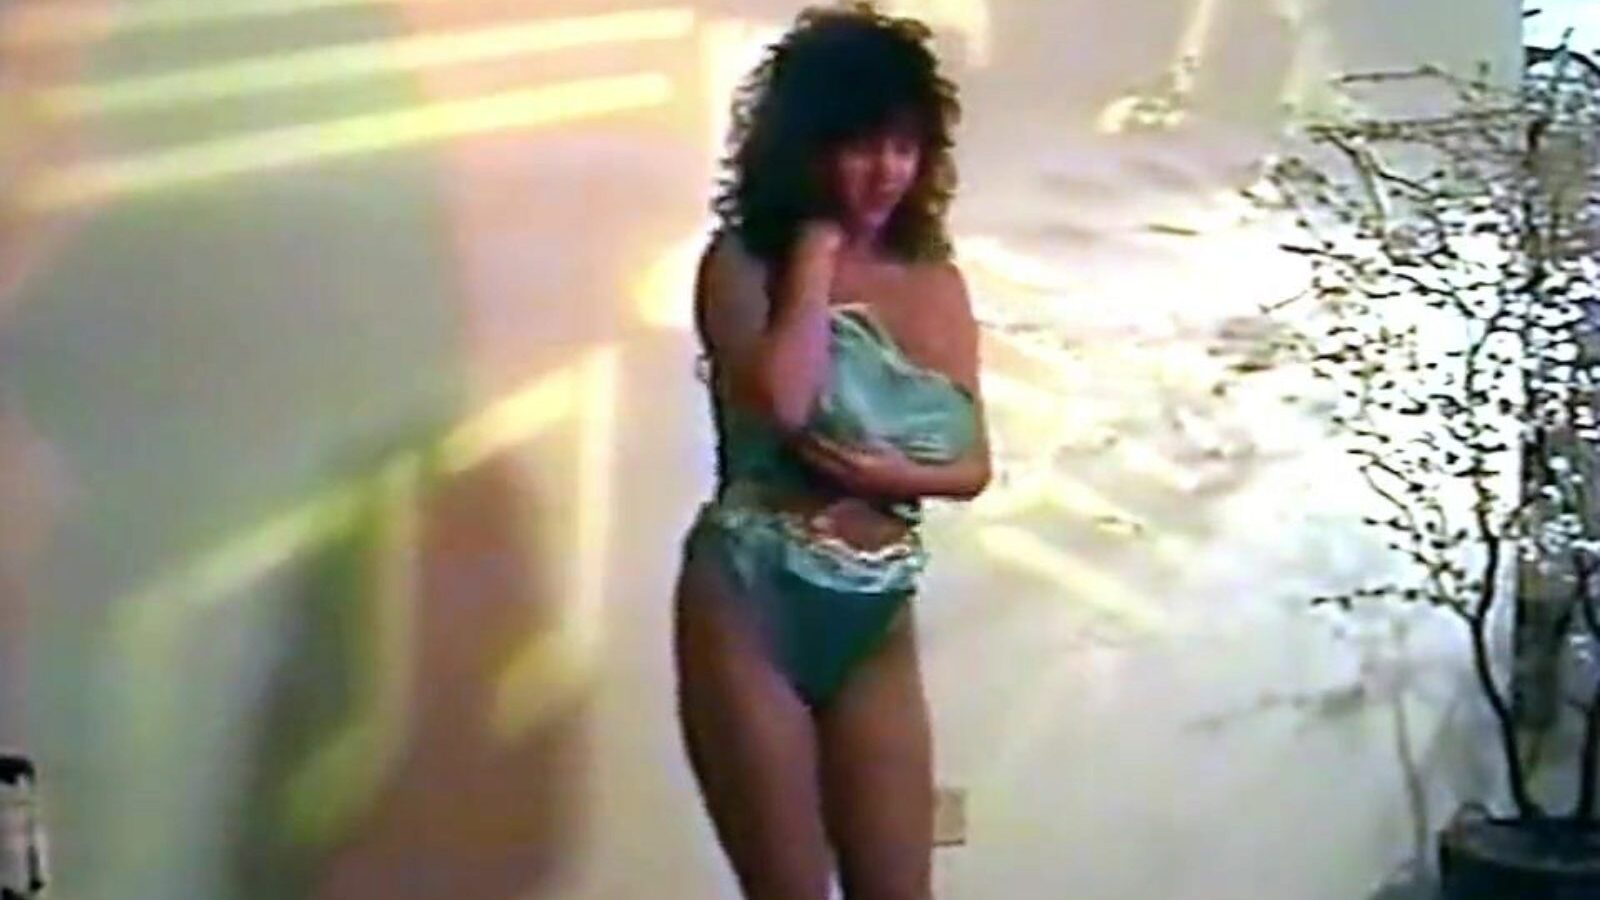 אובססיה - רצועת ריקוד הלבשה תחתונה של שנות ה -80 עם שעון גדול אובססיה - רצועת הלבשה תחתונה של שנות ה -80 עם ריקוד ציצים גדולים סרט על xhamster - המאגר האולטימטיבי של ציצים בריטיים בחינם לכל קטעי וידאו